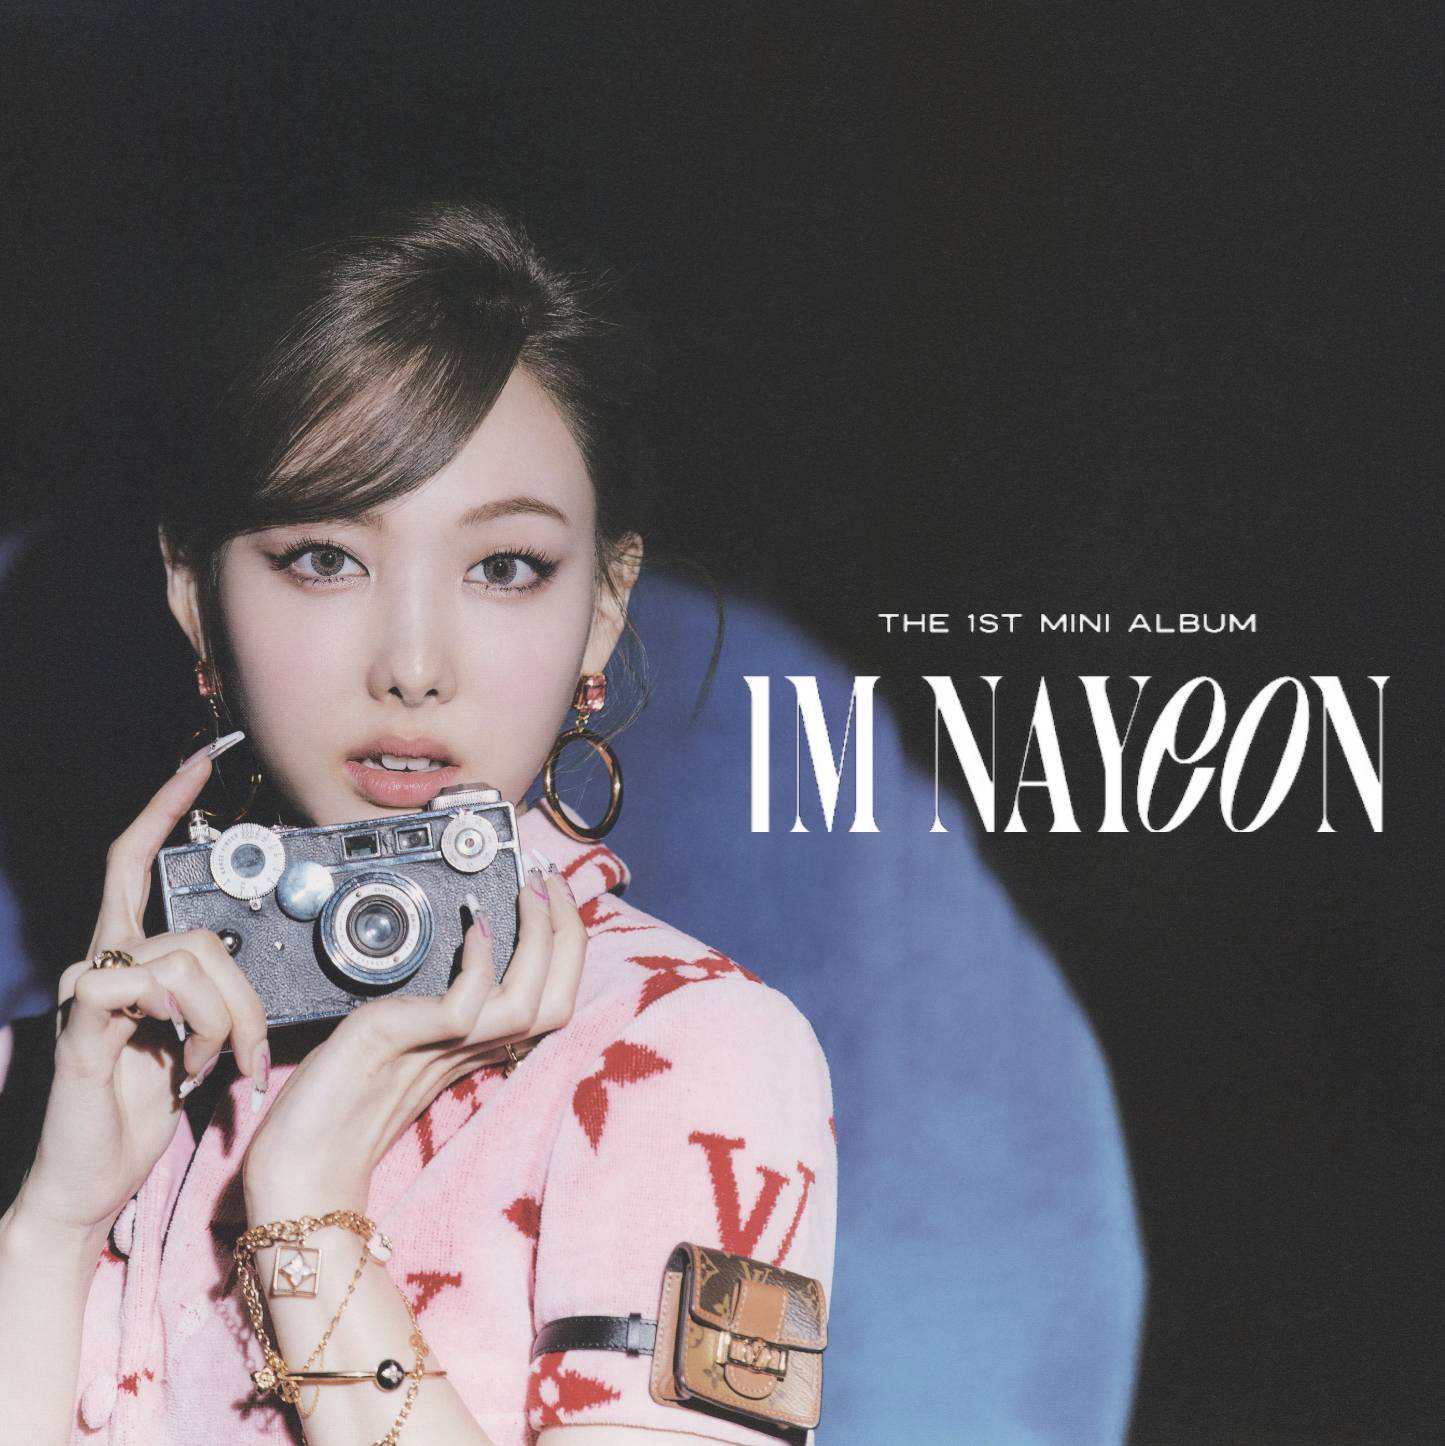 NAYEON - IM NAYEON (ALBUM COVER) by Kyliemaine on DeviantArt